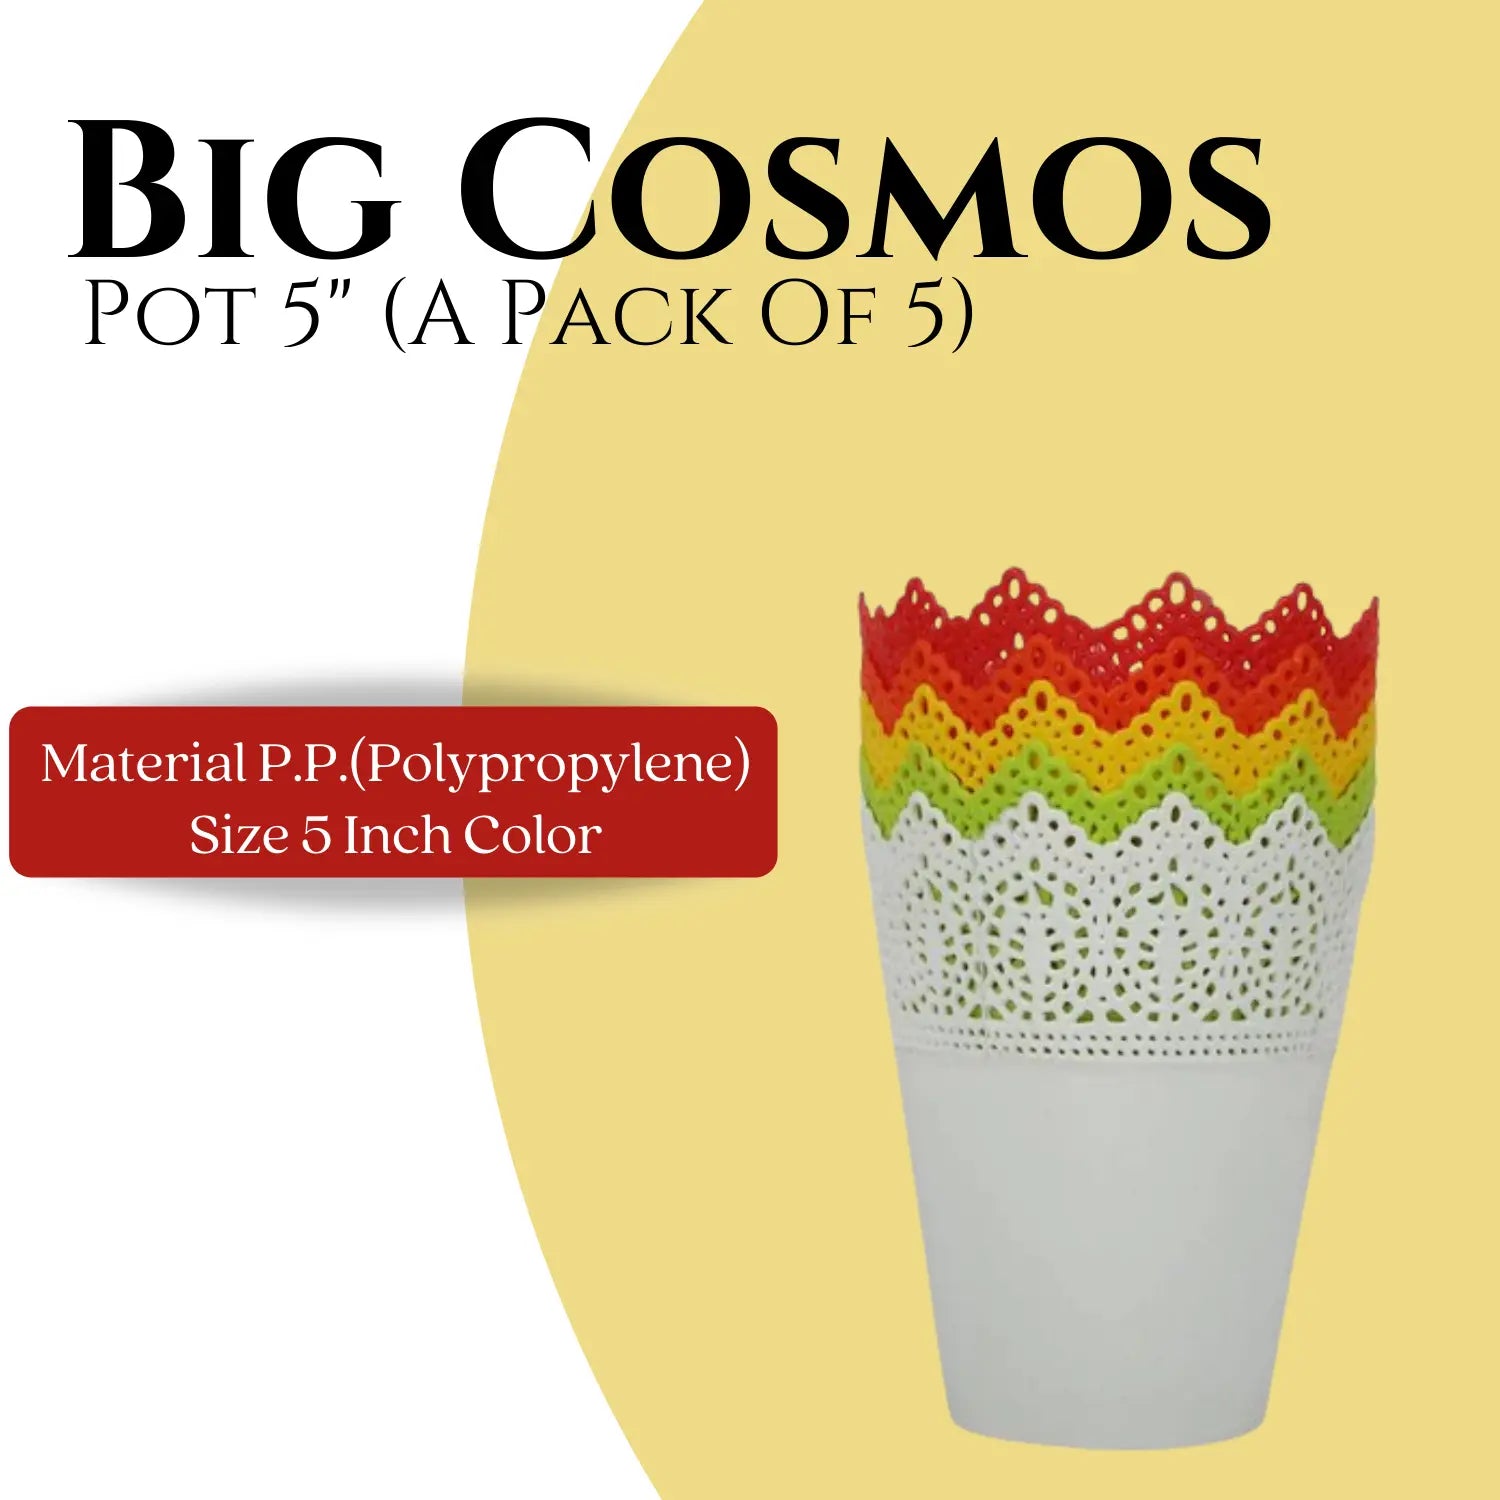 Big Cosmos Pot 5" (A Pack of 5)